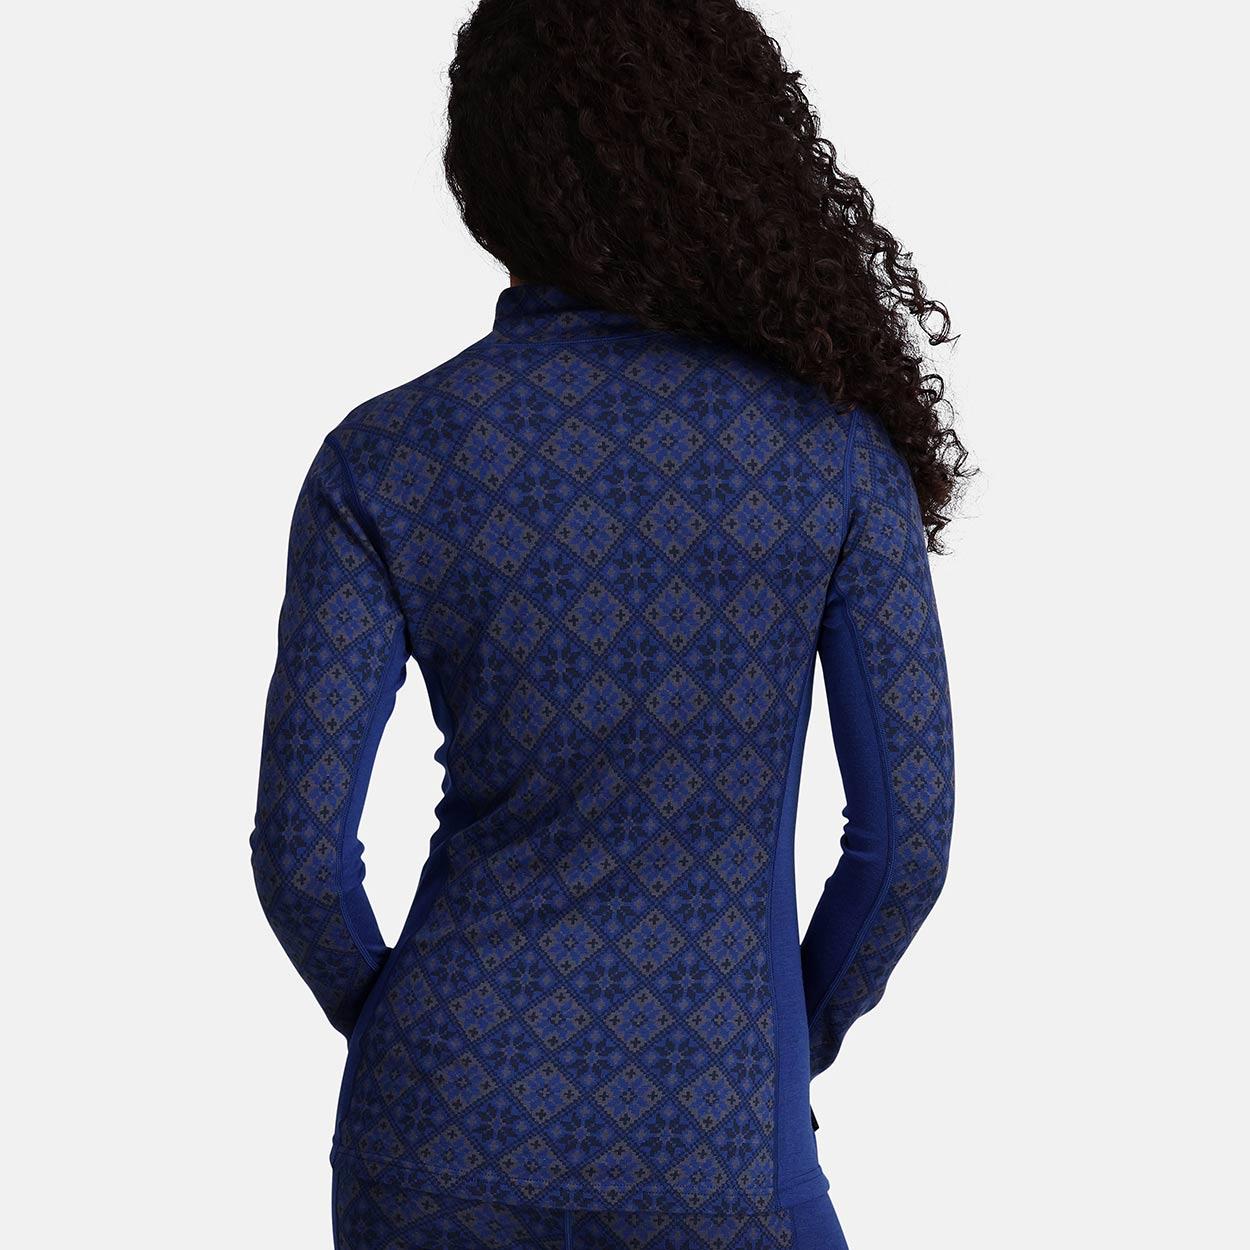 Kari Traa Sportunterwäsche Oberteile Rose in Farbe Blau am Modell in der Rückansicht